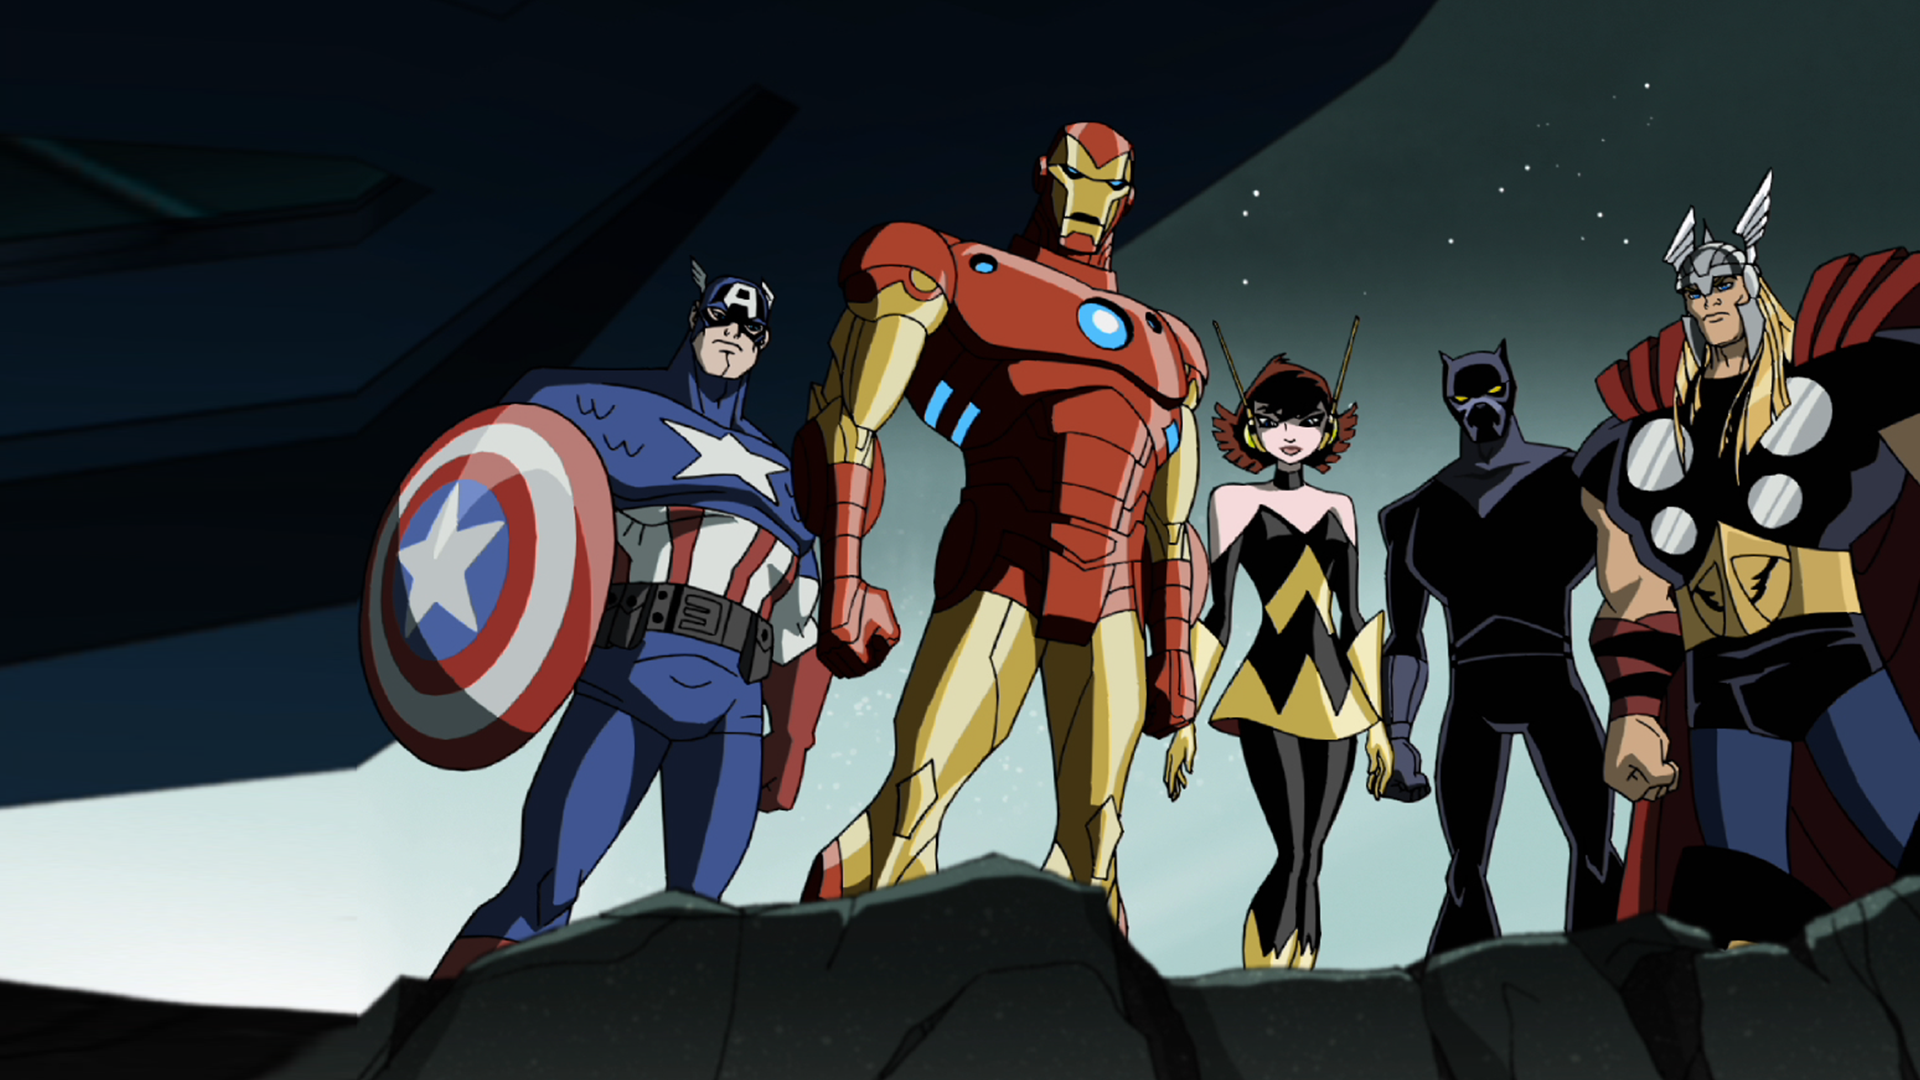 The Avengers: A Föld legnagyobb hősei